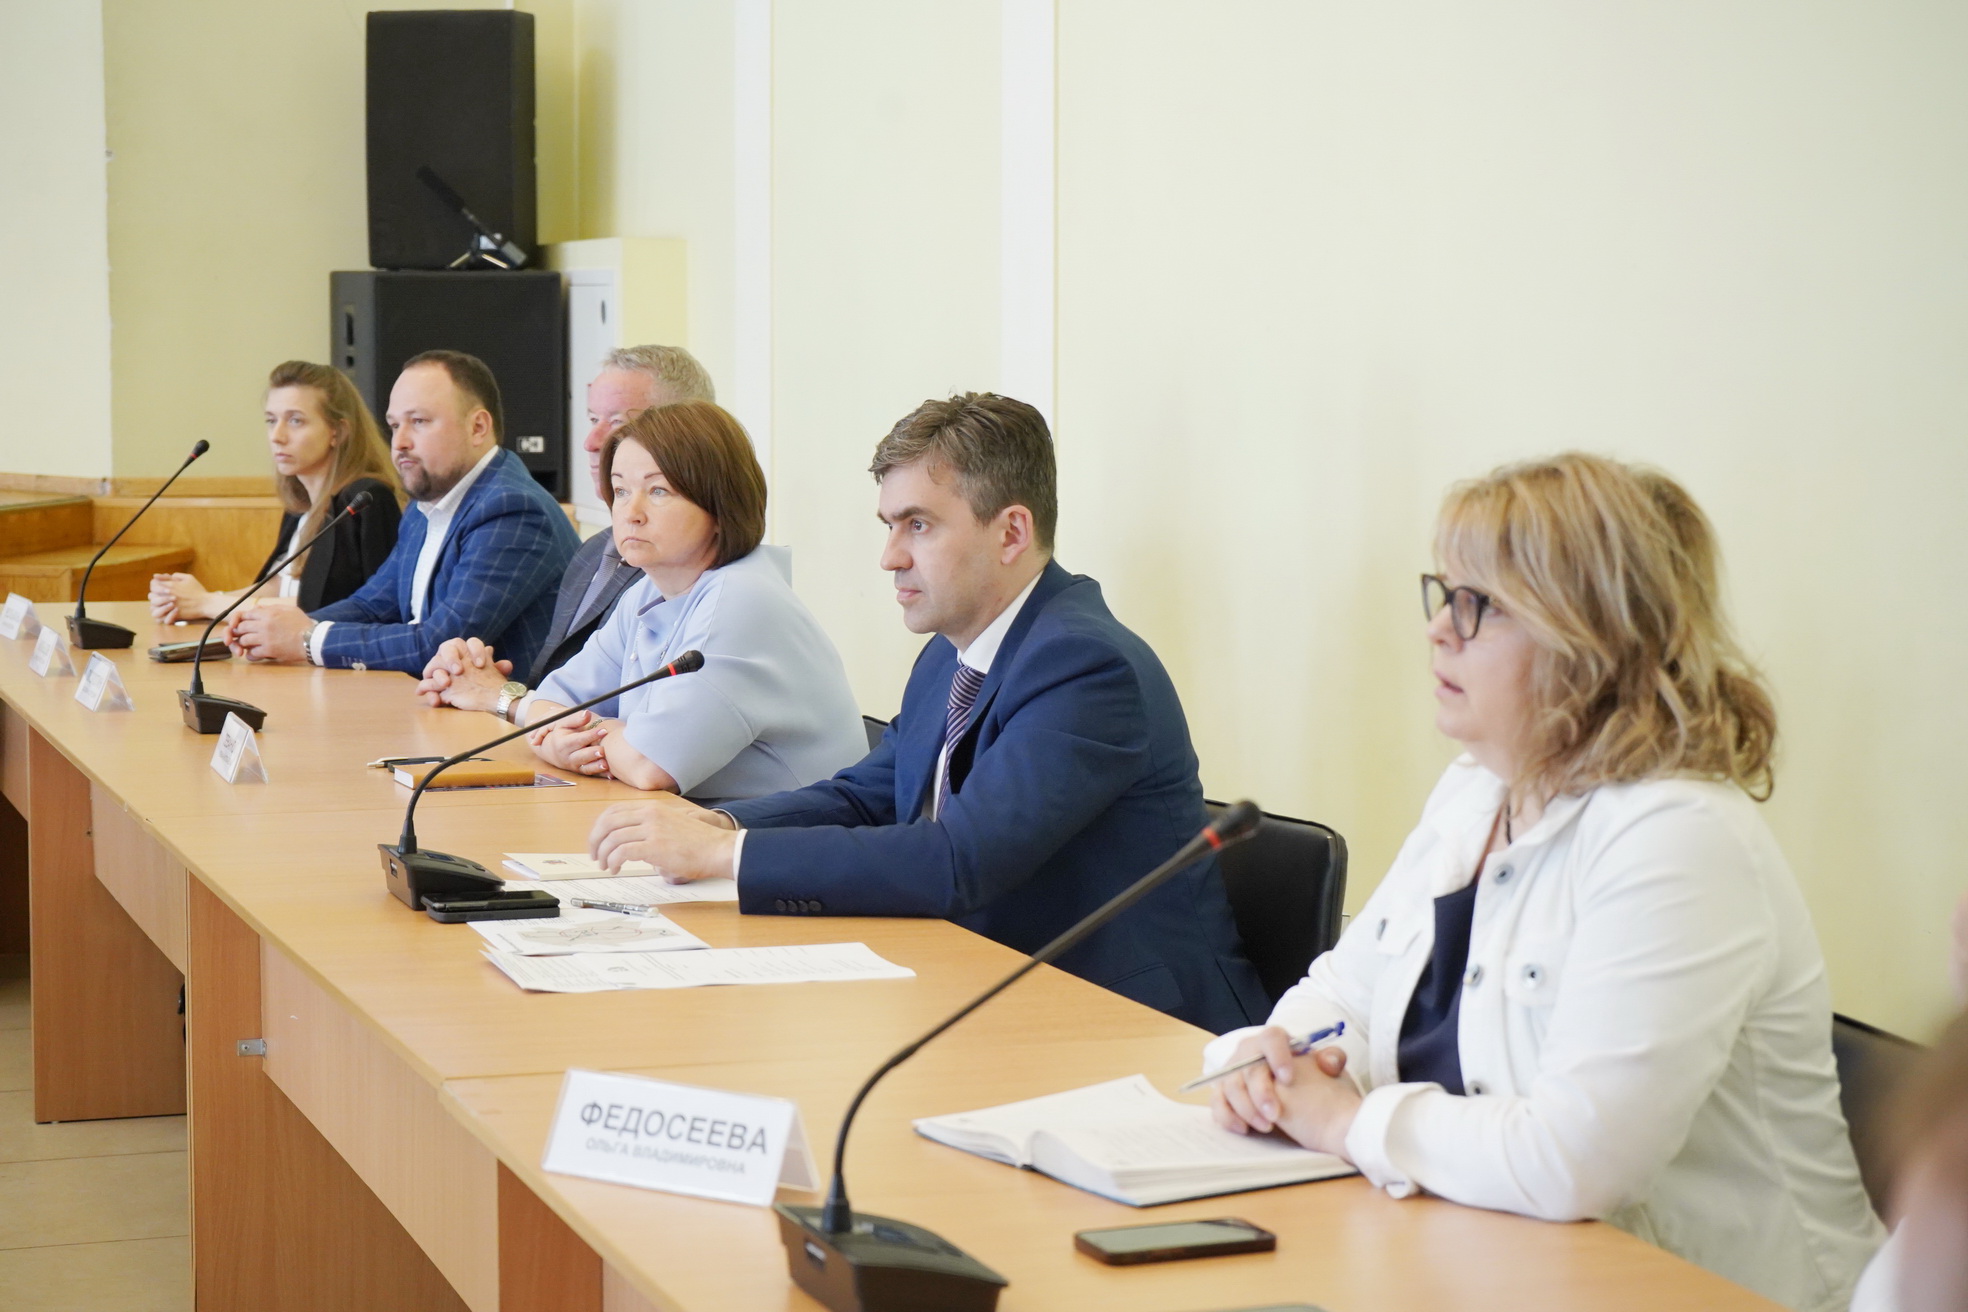 Станислав Воскресенский обсудил с общественниками новые инициативы в проект студенческого кампуса в Иванове